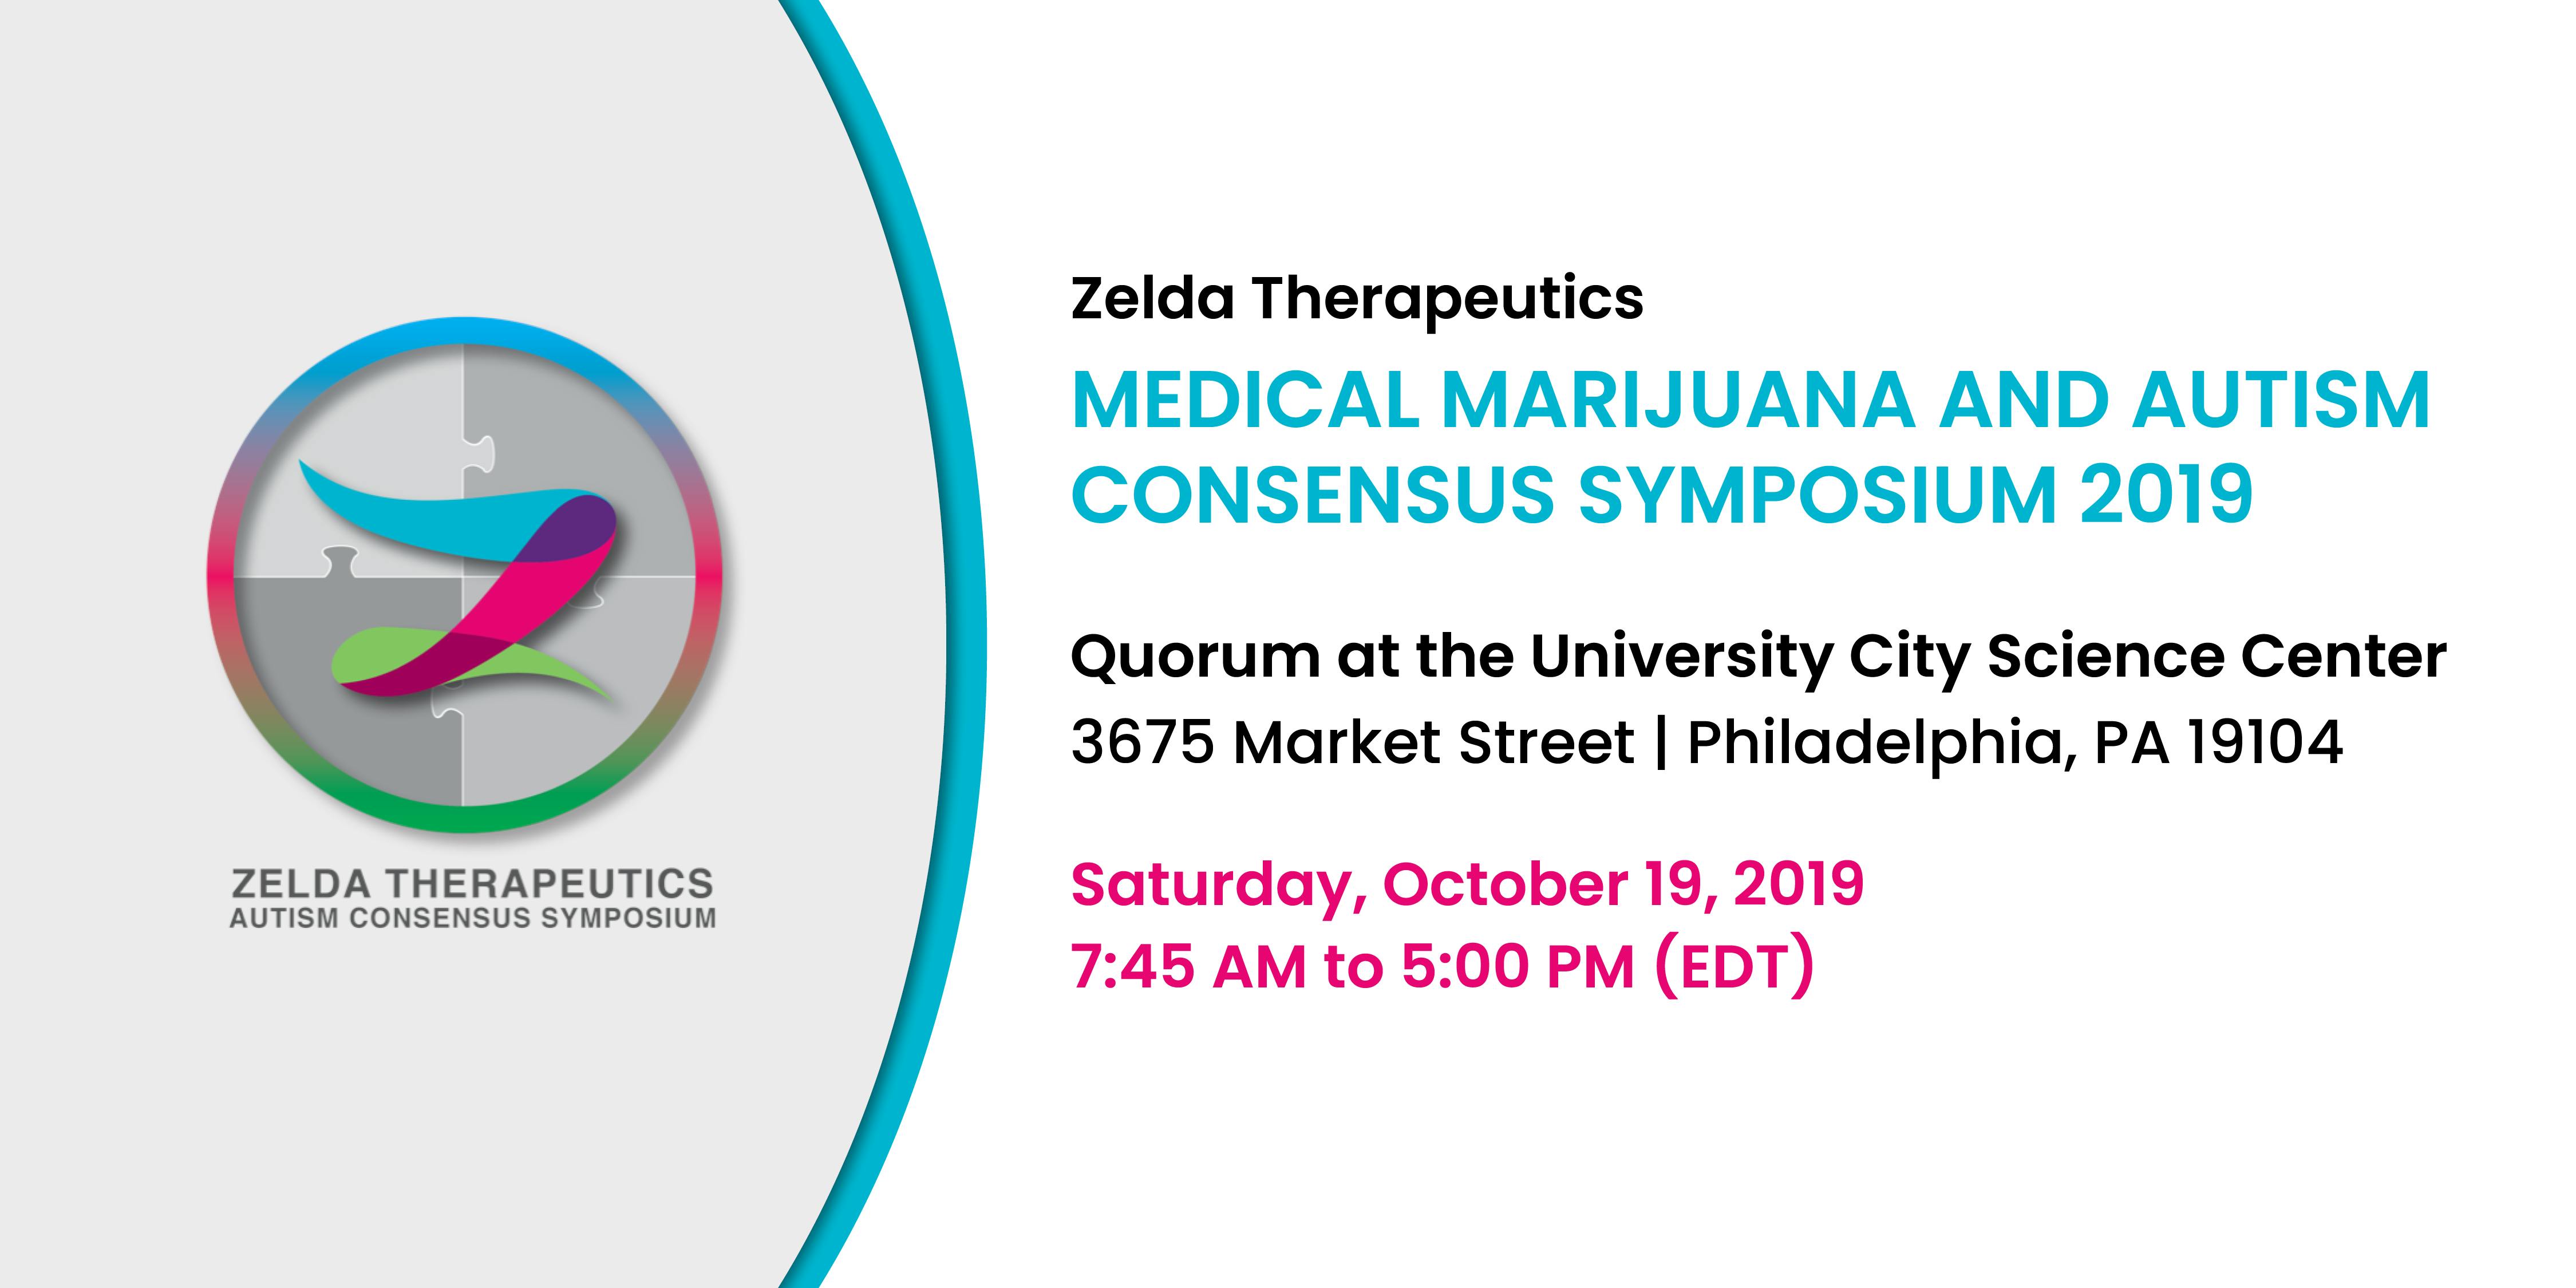 Zelda Therapeutics Medical Marijuana and Autism Consensus Symposium 2019